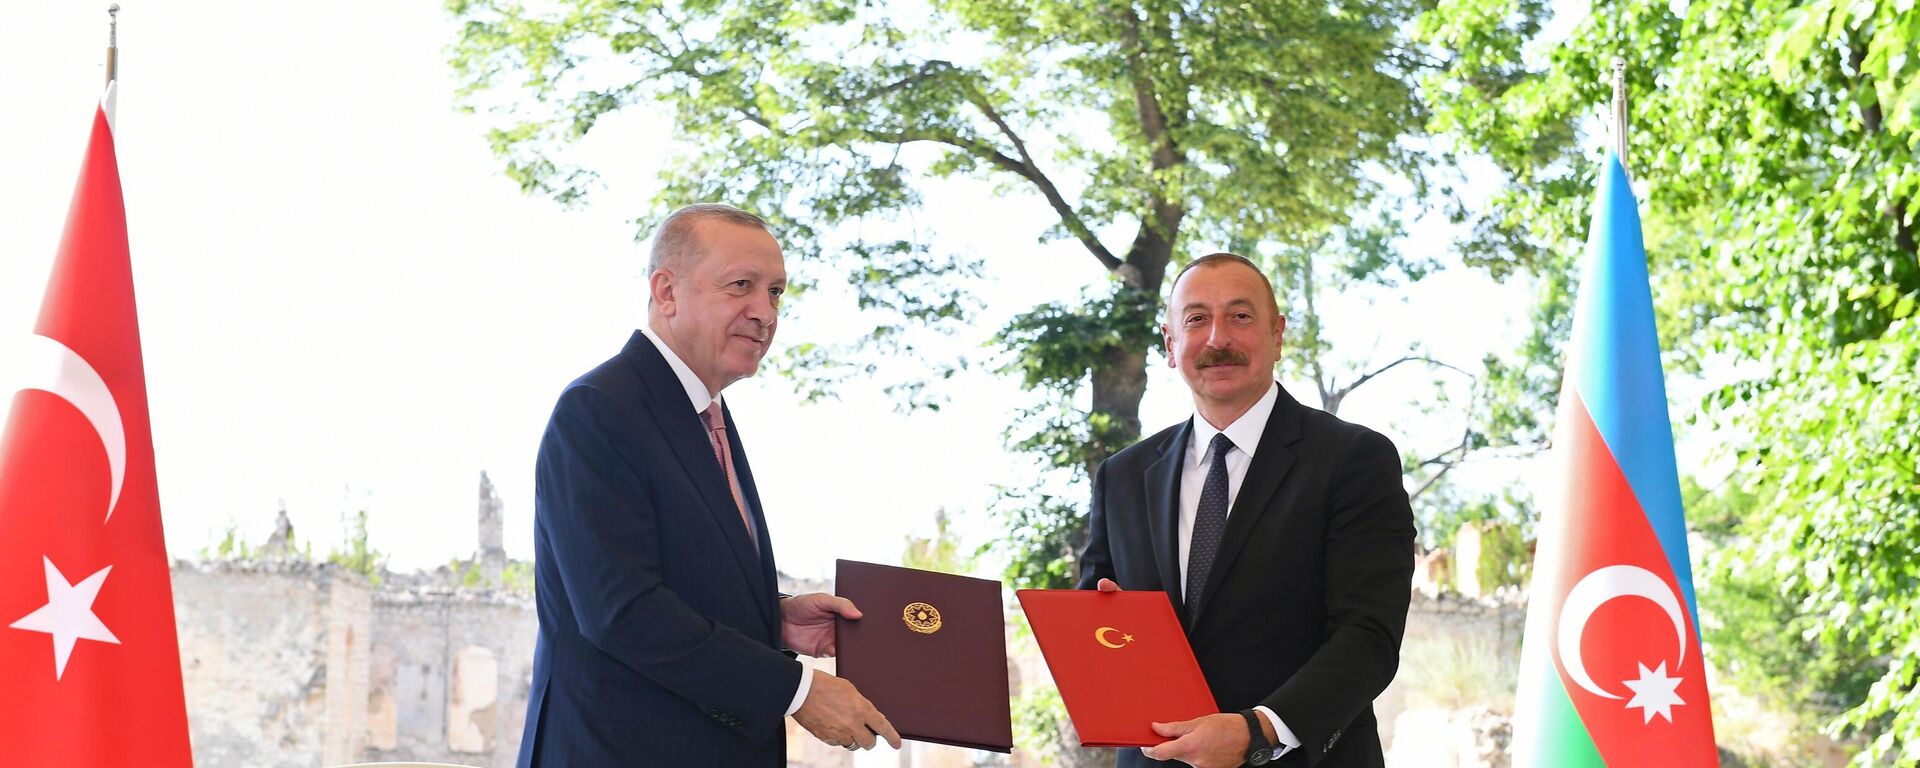 Recep Tayyip Erdogan, el presidente de Turquía (izda.), con su homólogo azerí Iljam Alíev (dcha.) firmando una declaración de relaciones aliadas  - Sputnik Mundo, 1920, 15.06.2021